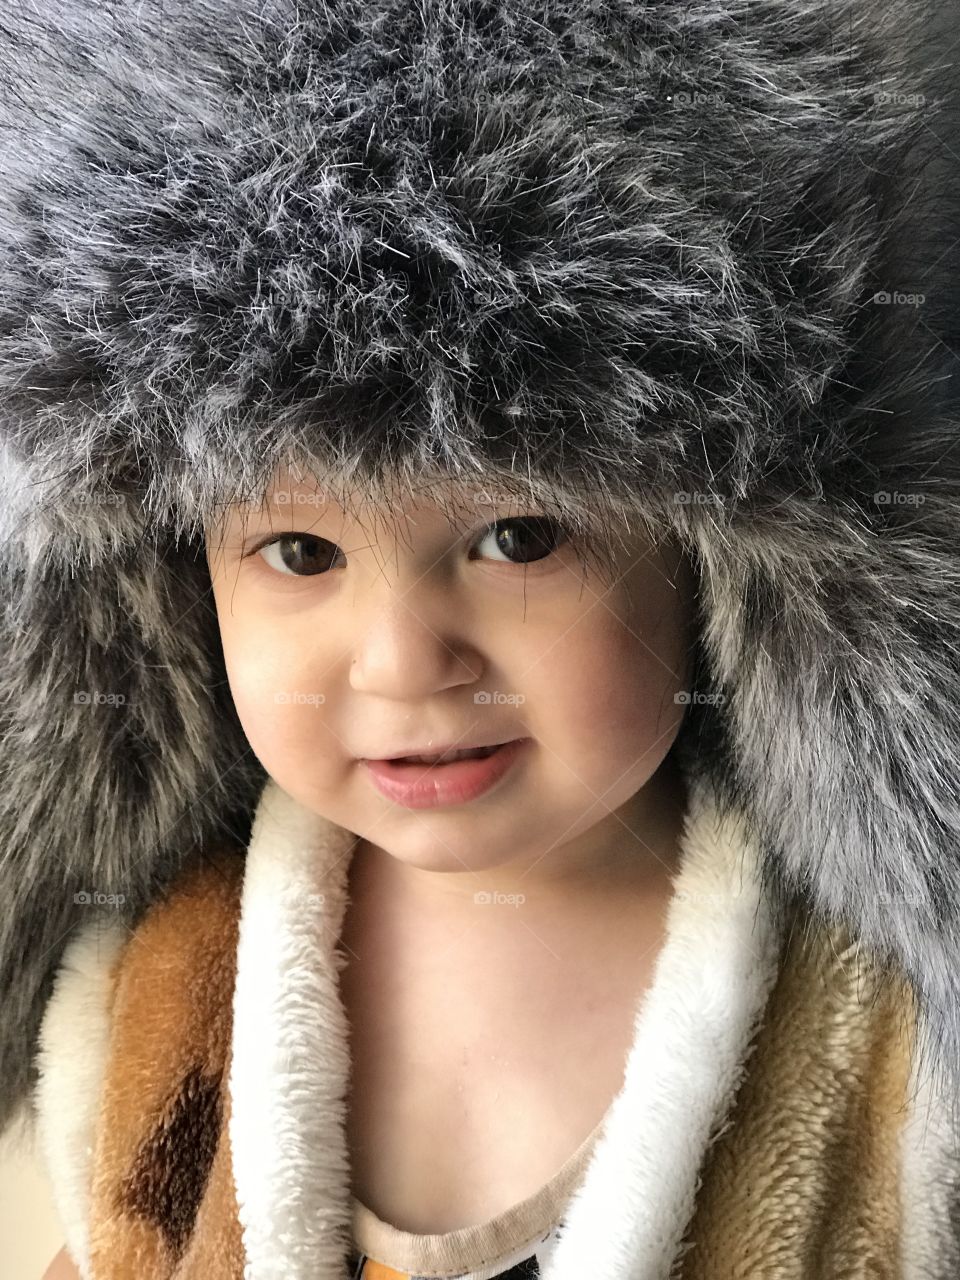 Ребёнок малыш сын якут мальчик красивый шапка ушанка русский парень дети мода стиль 